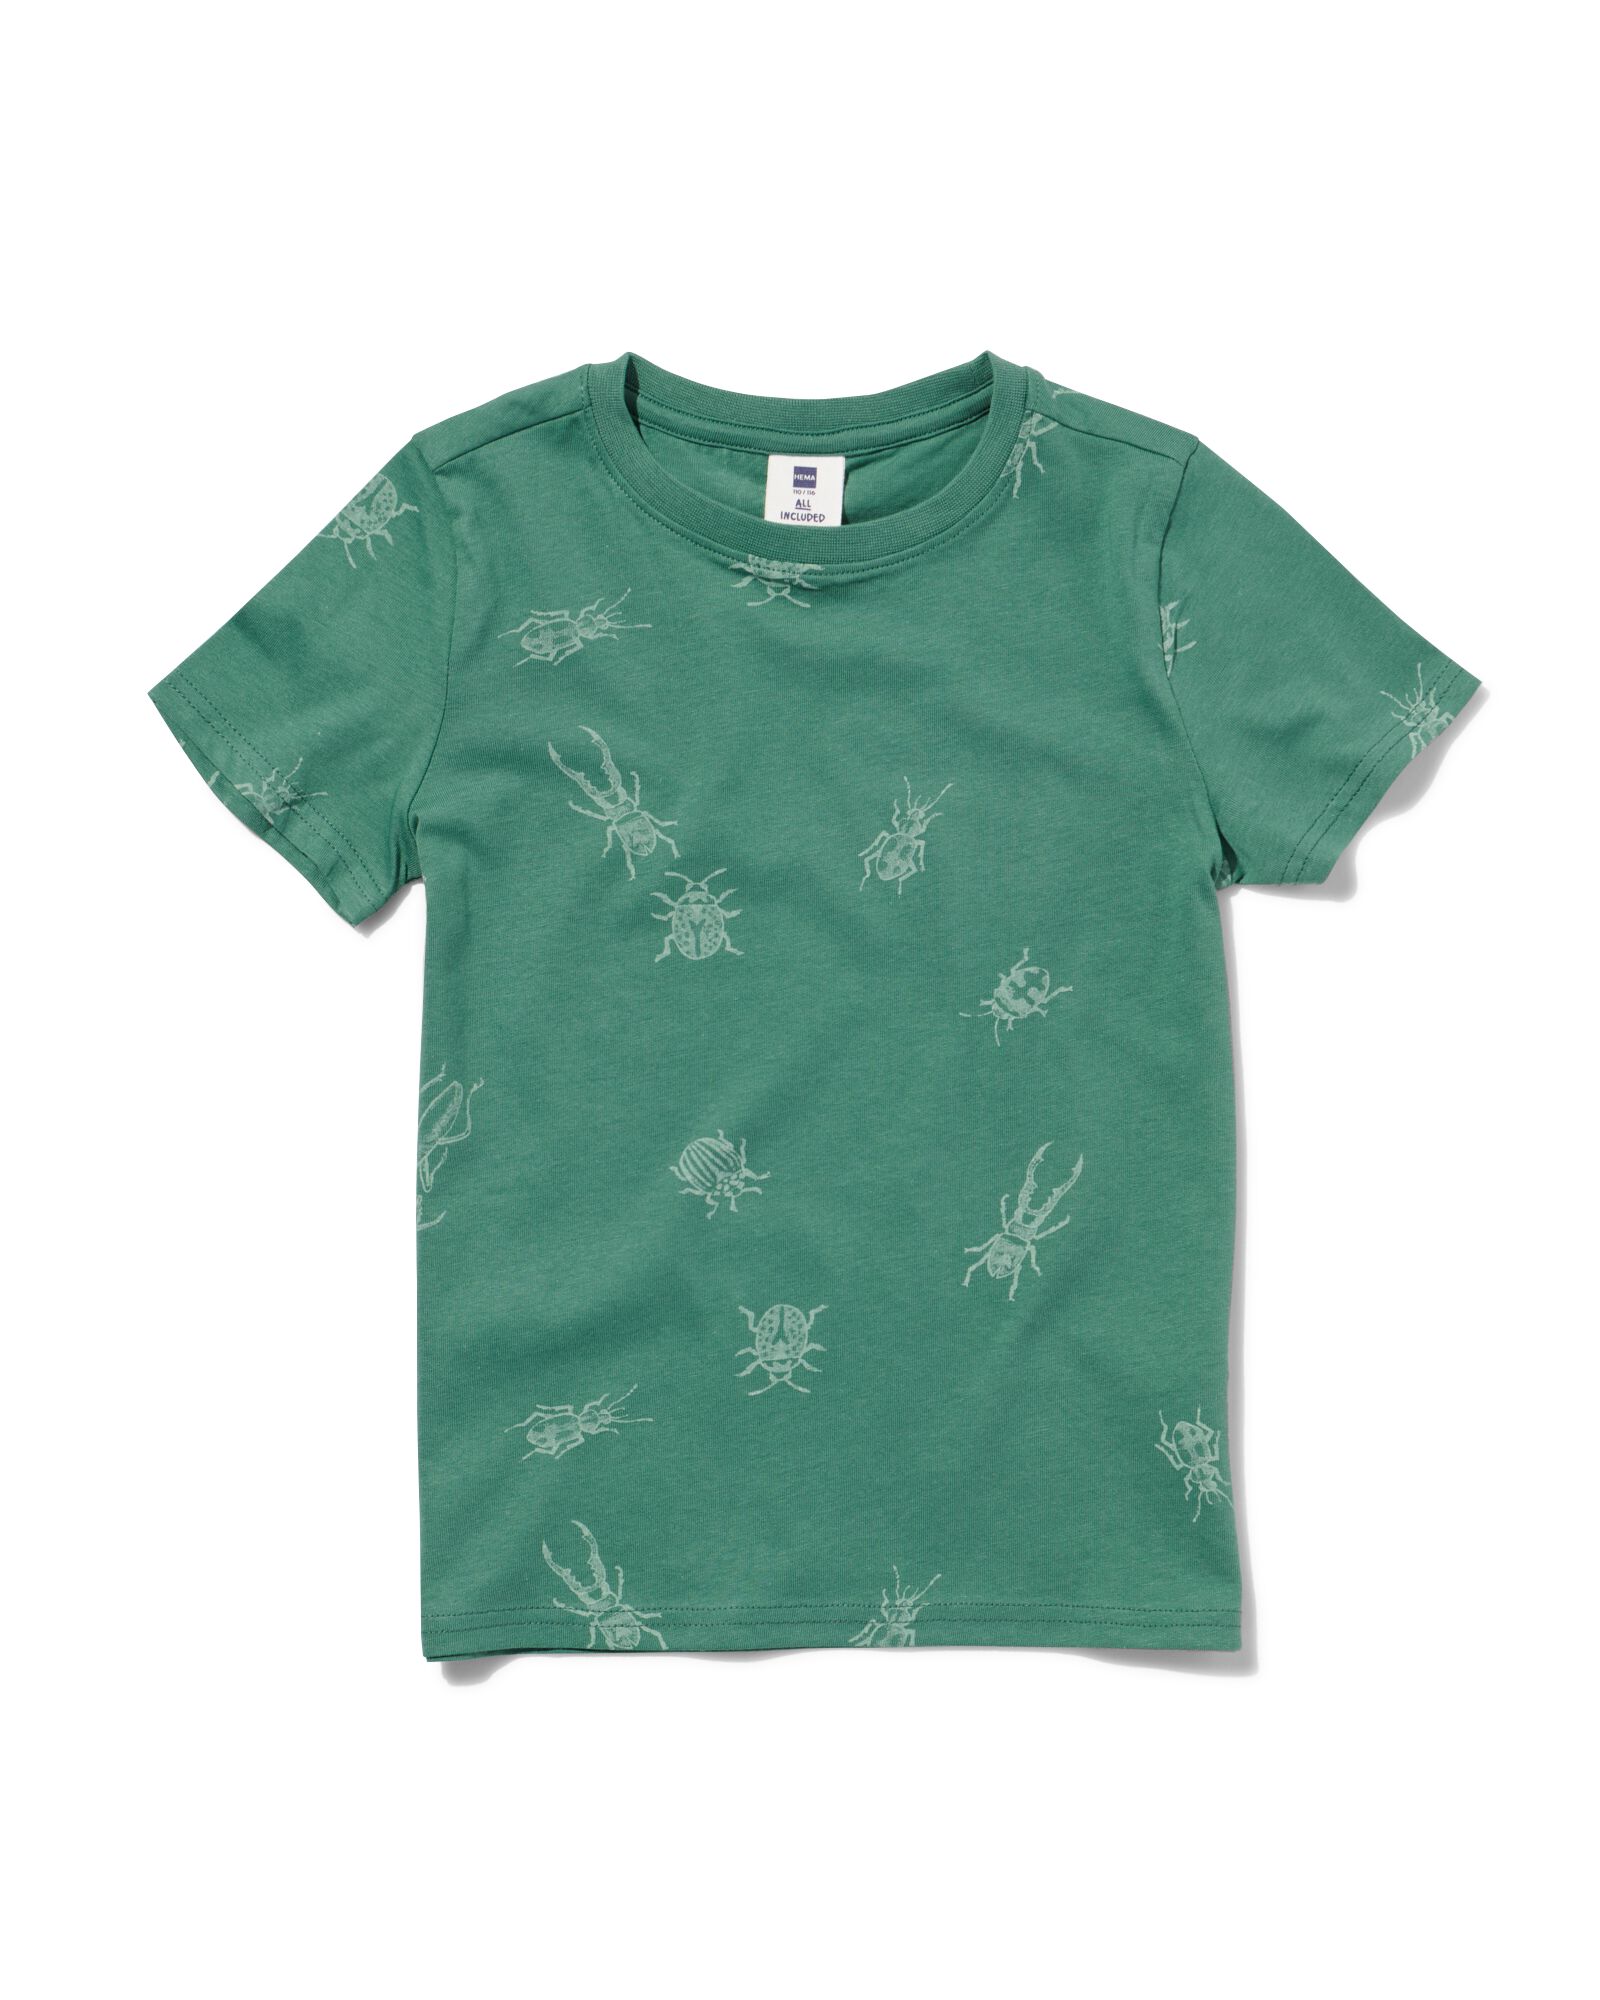 kinder t-shirt insecten groen 86/92 - 30767645 - HEMA